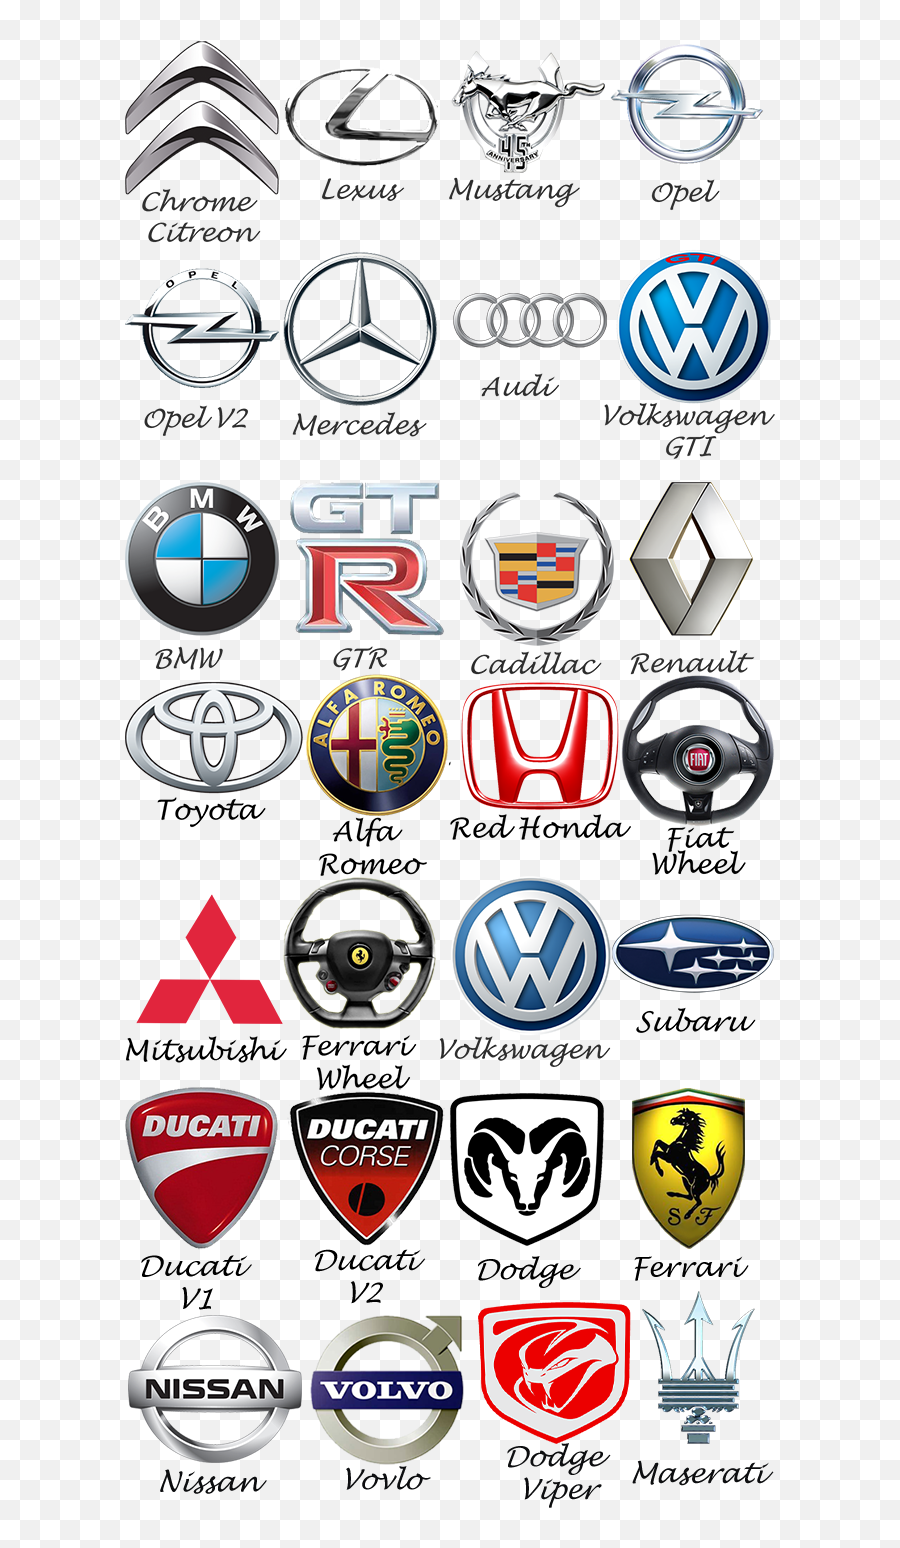 car logos with names